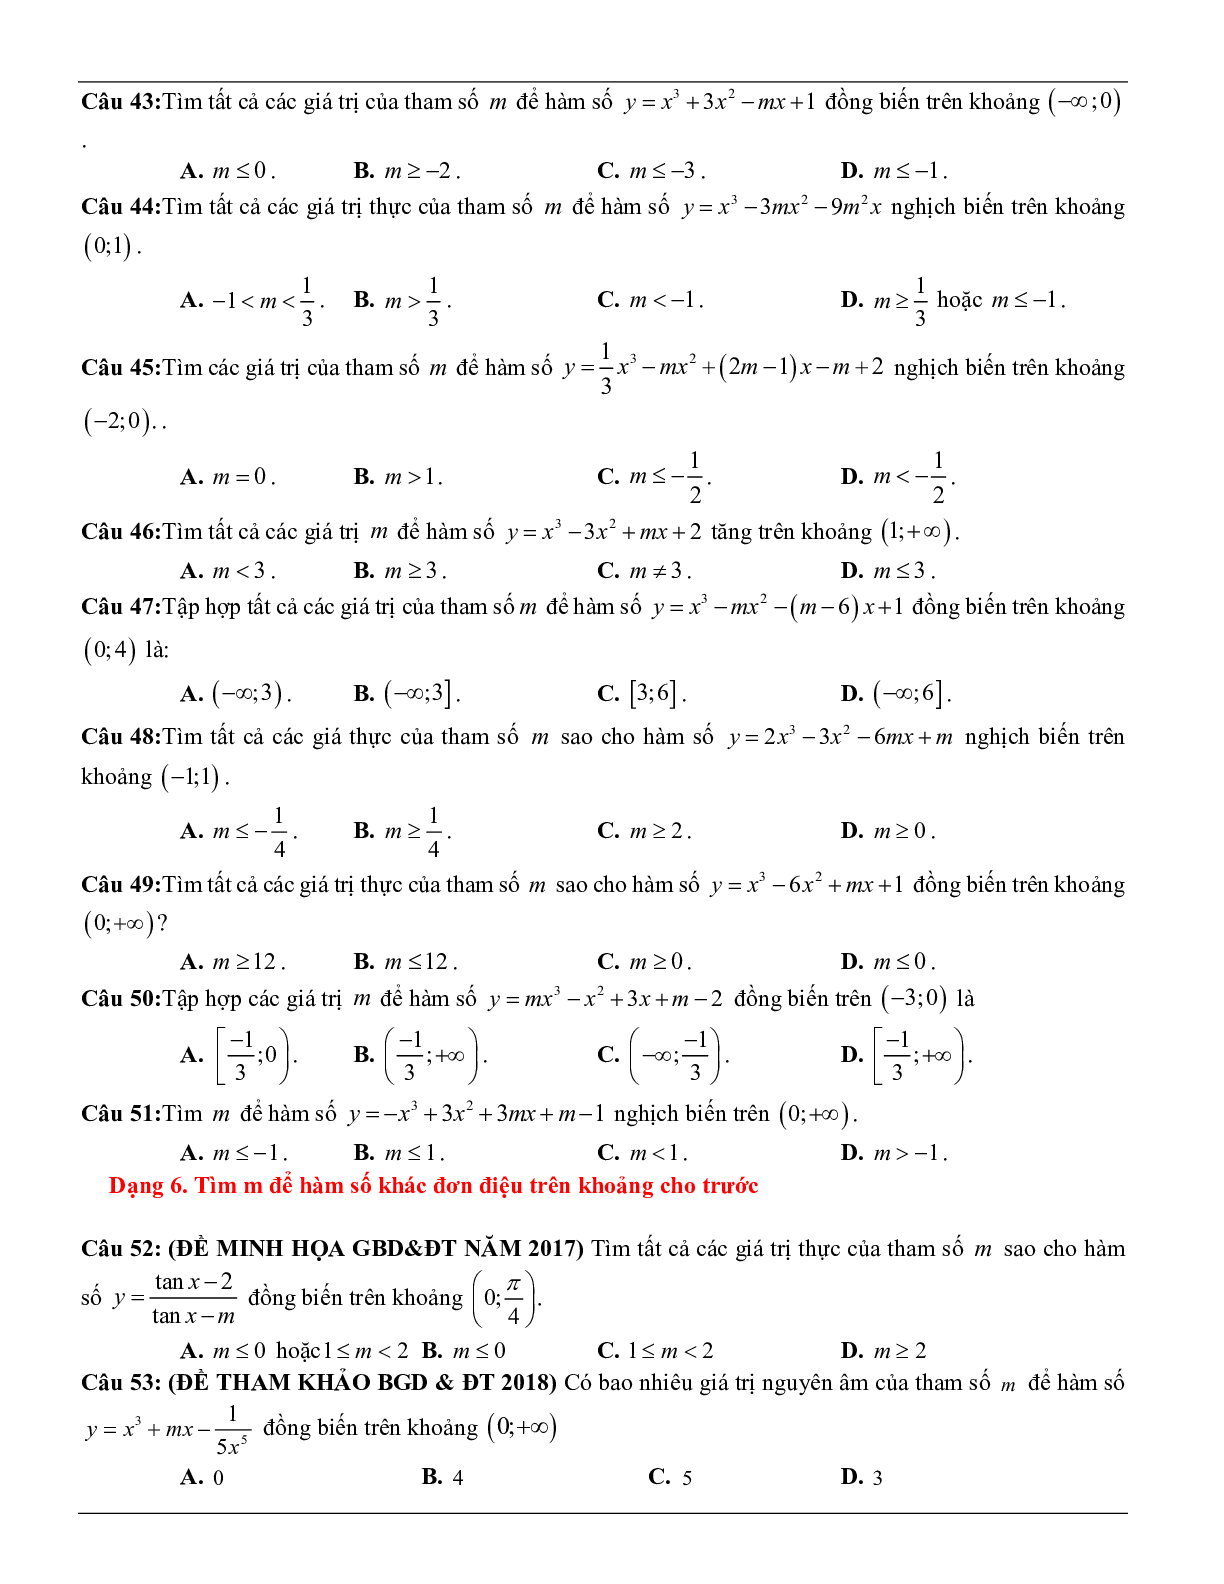 Các dạng toán về tính đơn điệu của hàm số thường gặp trong kỳ thi THPT Quốc gia (trang 7)